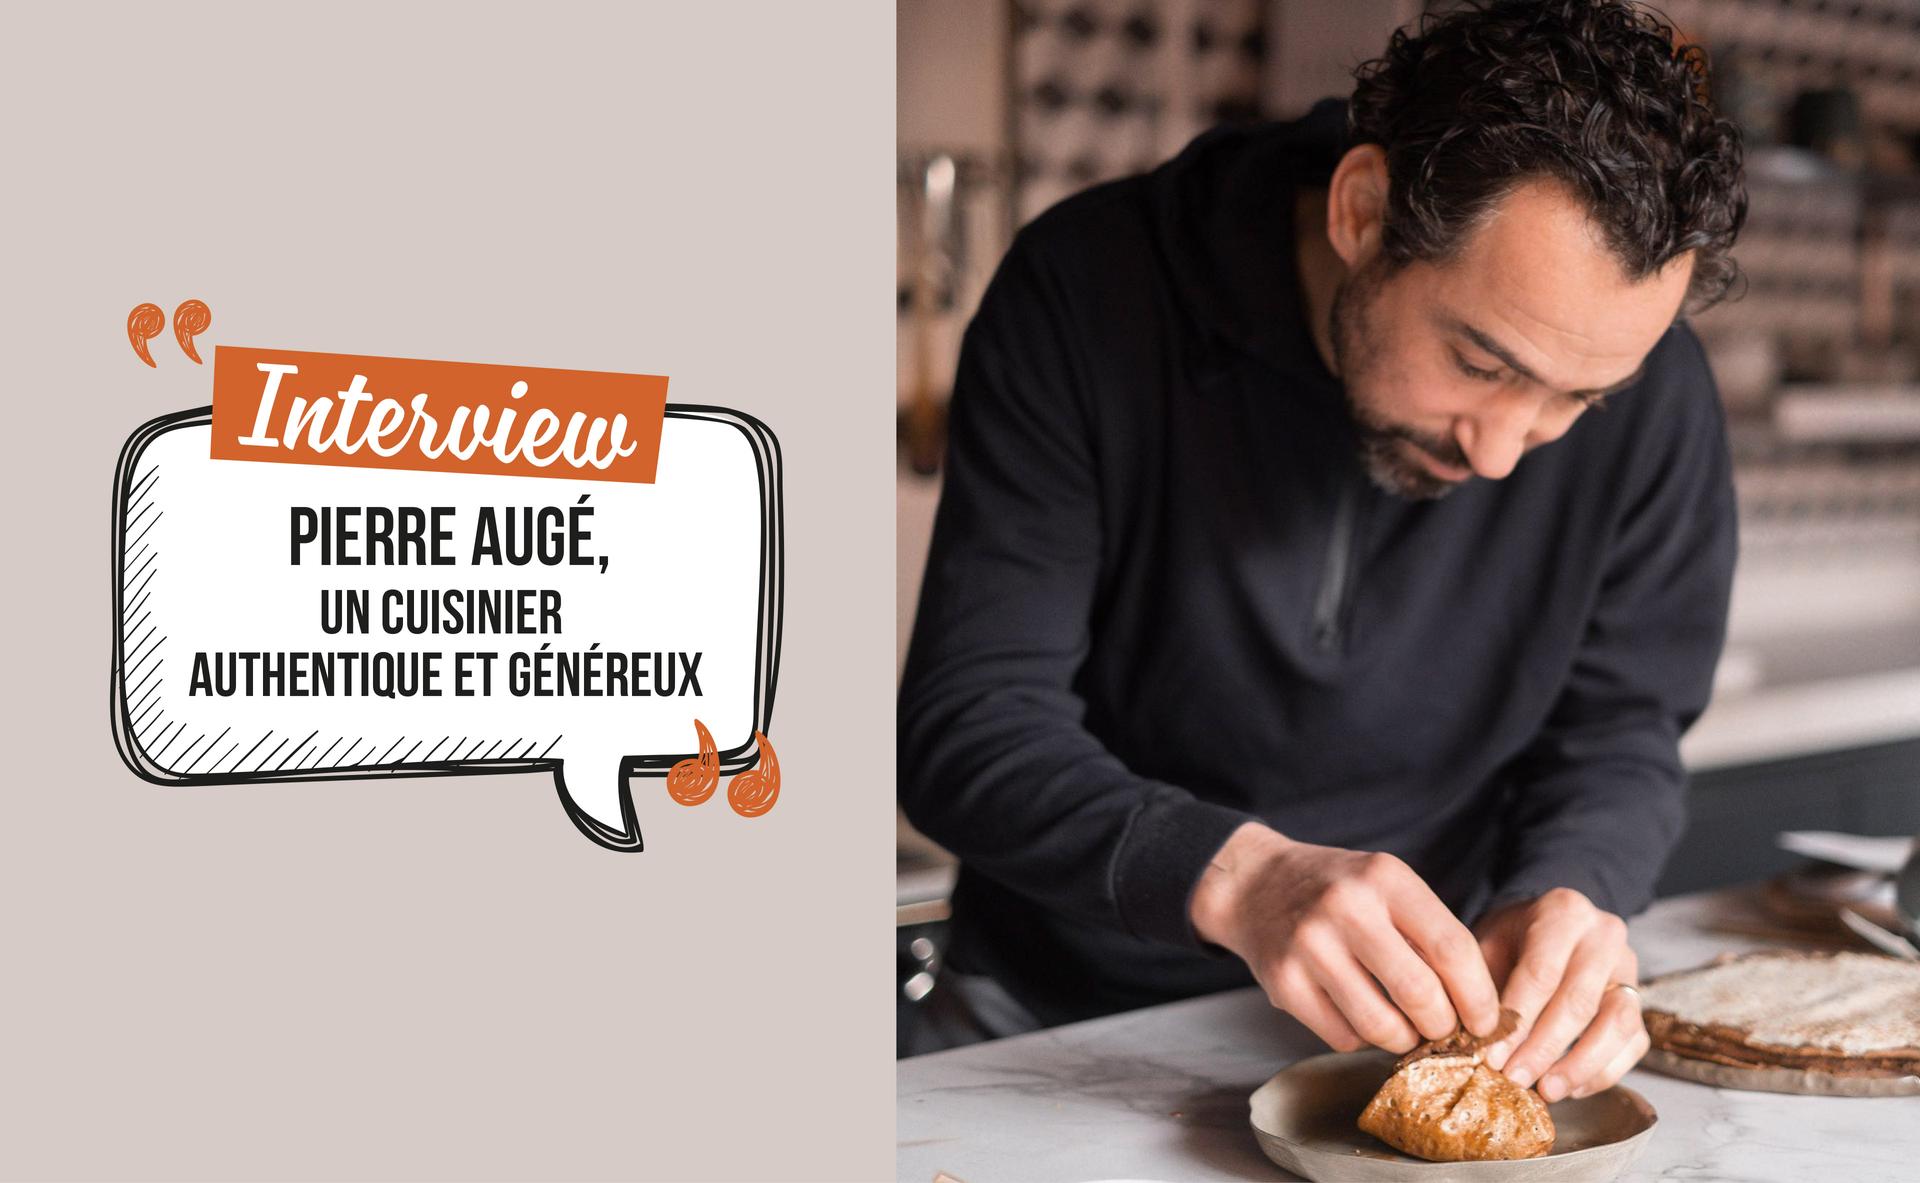 Pierre Augé, un cuisinier authentique et généreux